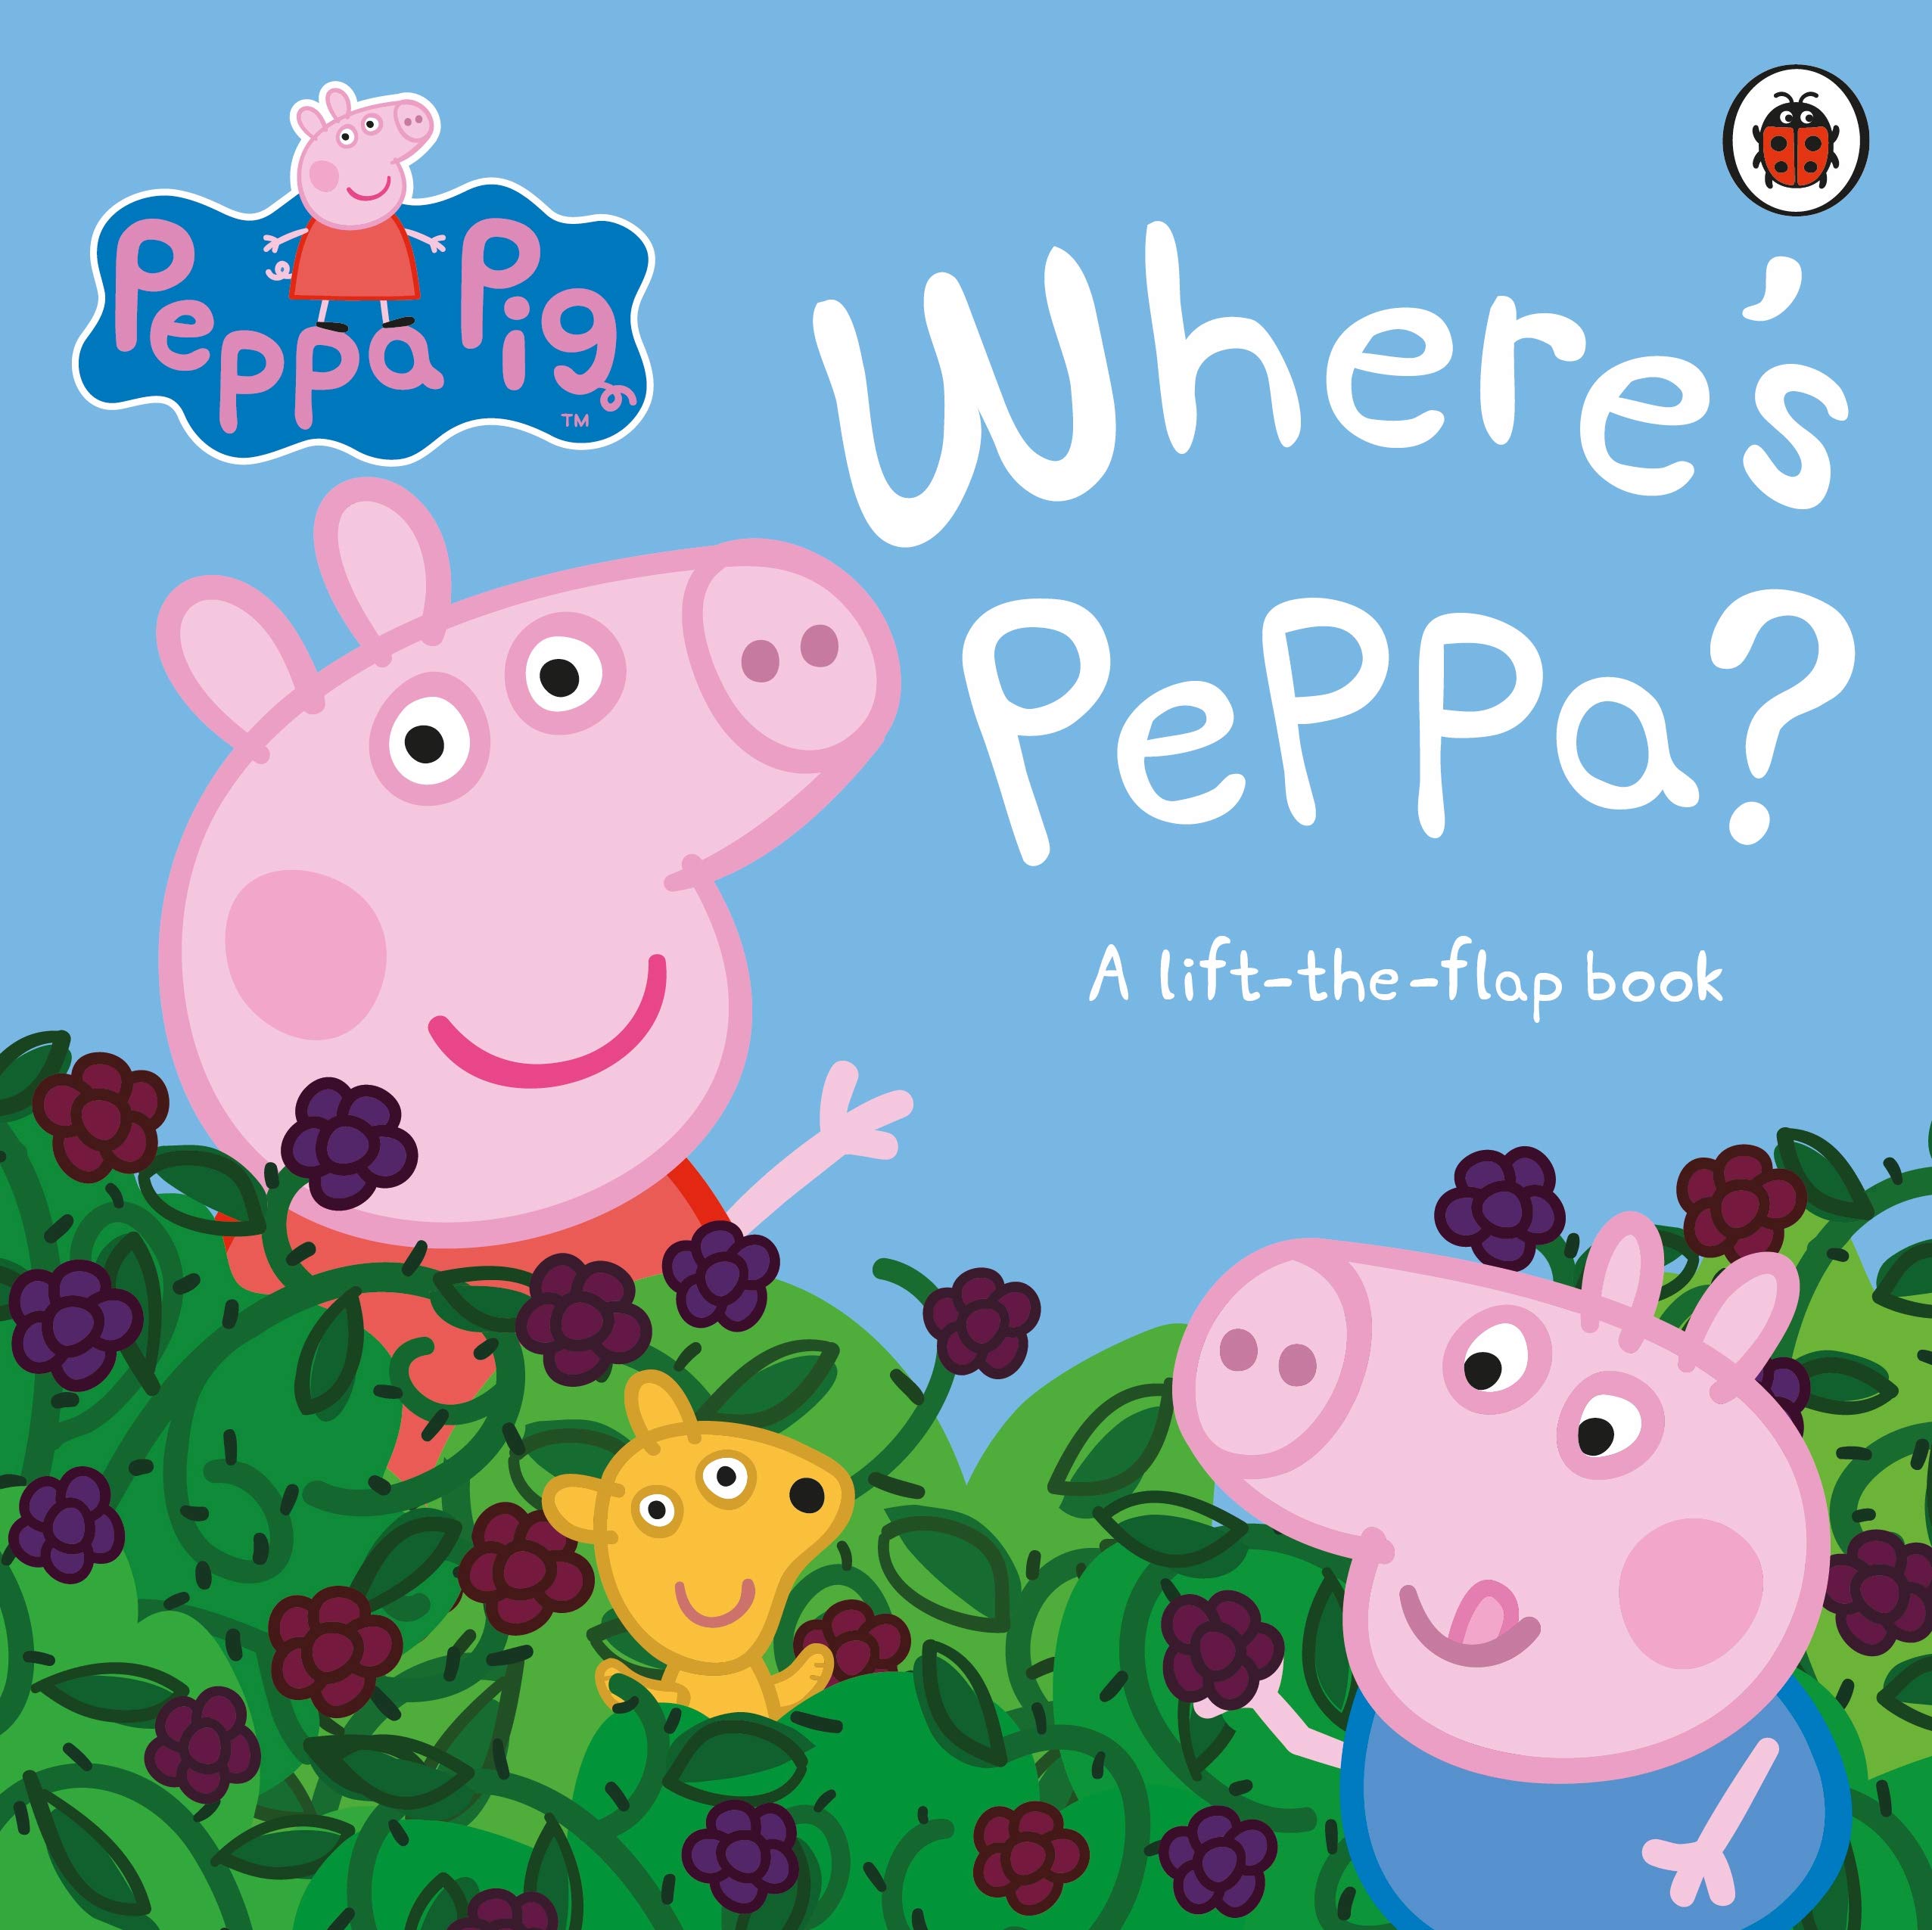 Peppa Pig: Where’s Peppa?